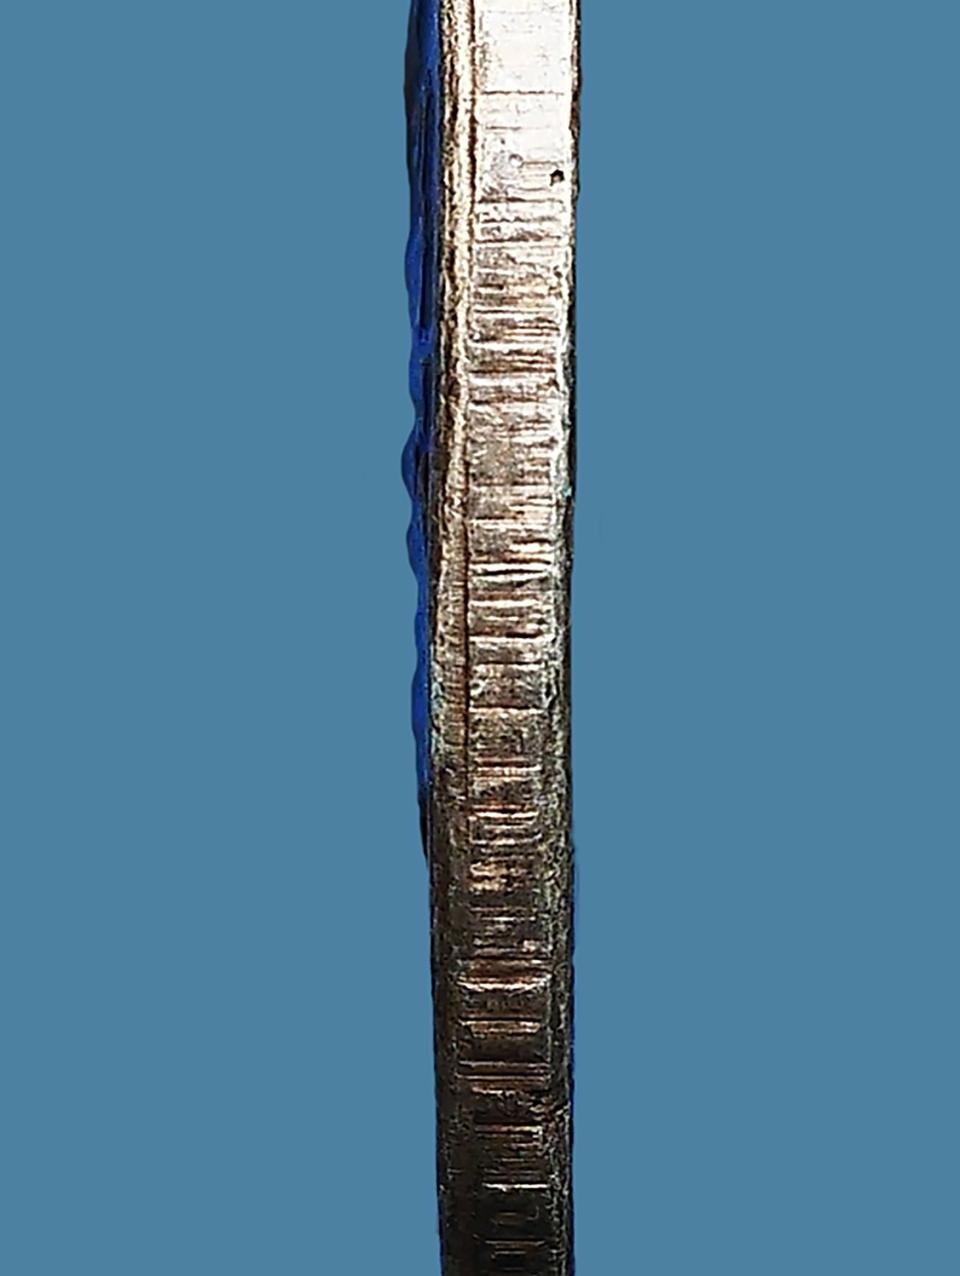 เหรียญพระพุทธชินราช วัดพระศรีรัตนมหาธาตุฯ รุ่นแรก ปี 2460 เนื้อเงิน...เก่าๆ รูปเล็กที่ 5